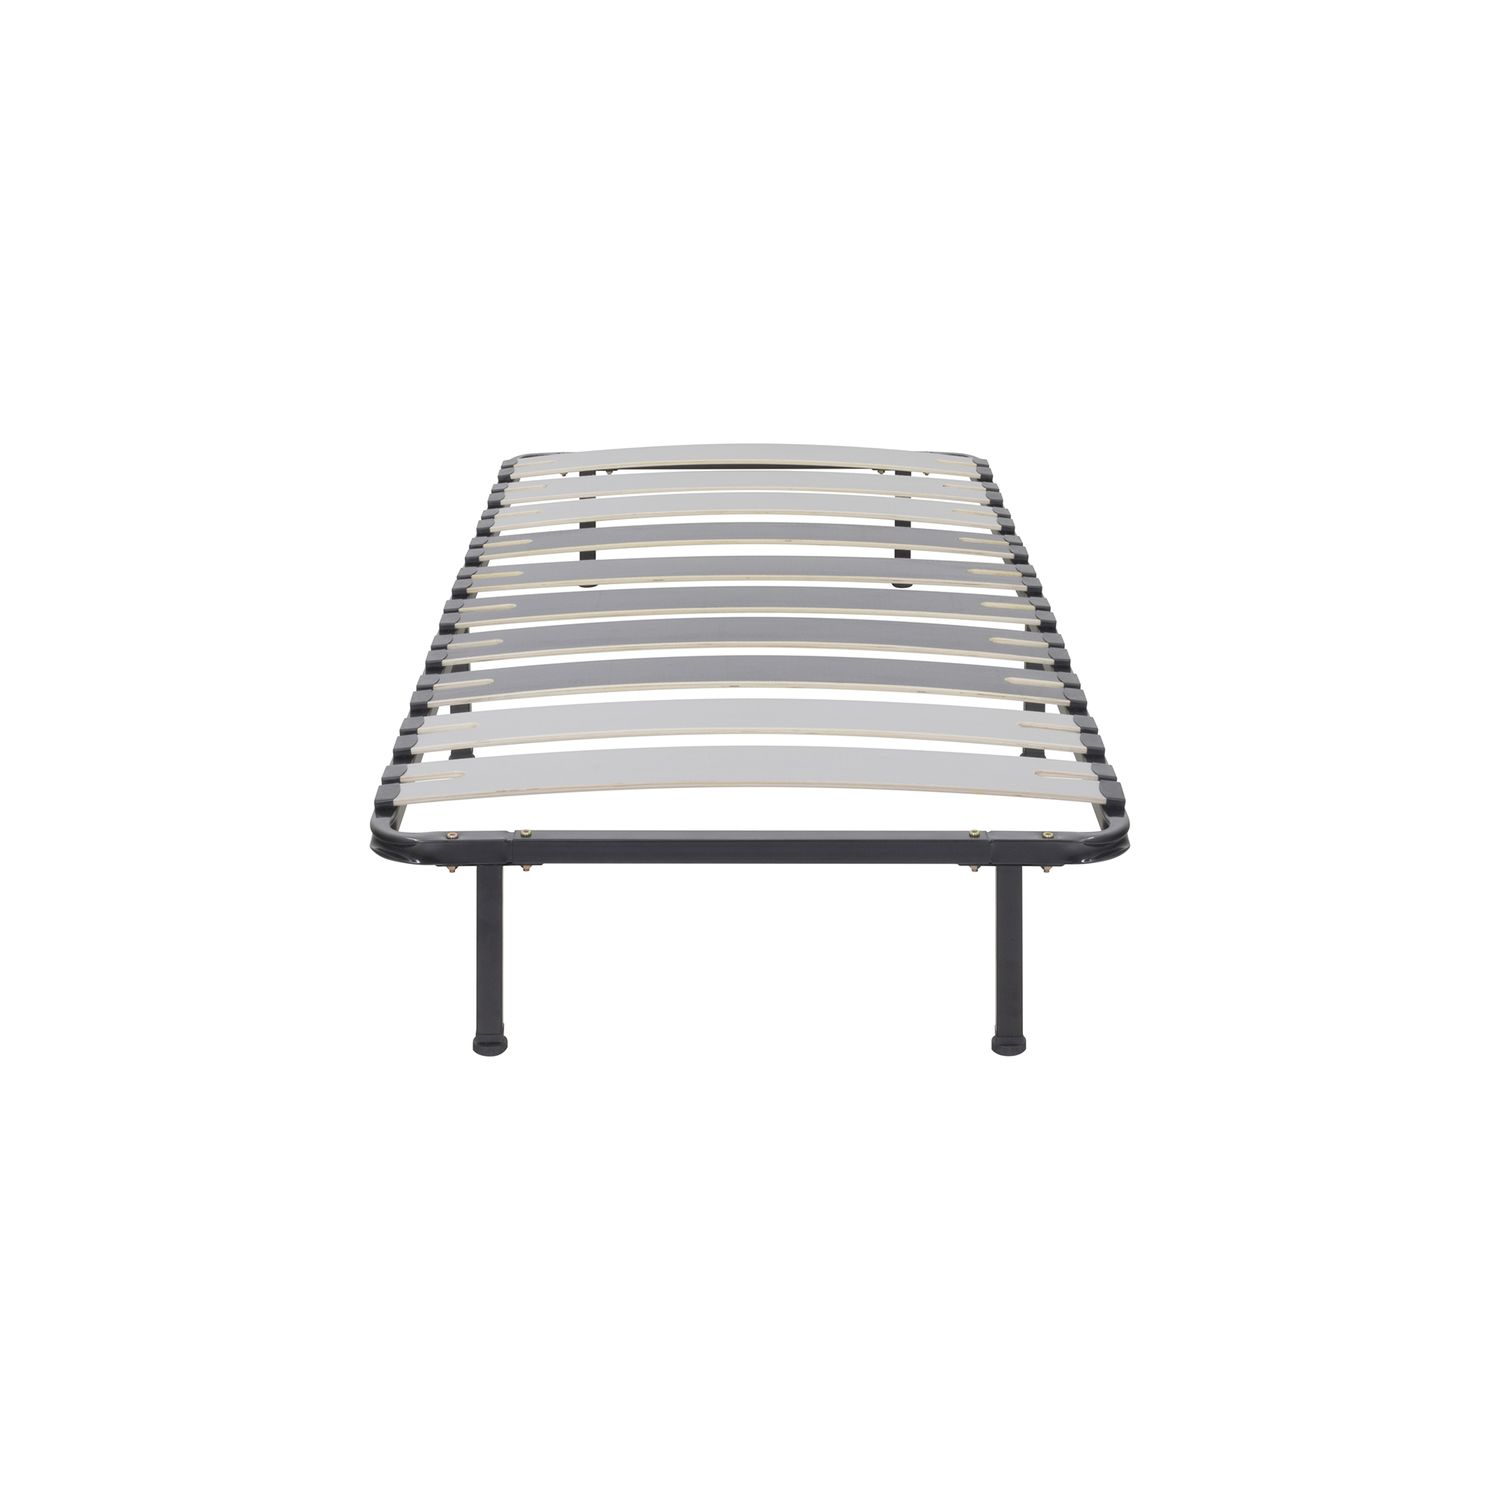 Metallbett Deck mit Breiten Latten für alle Betten und Matratzen geeignet